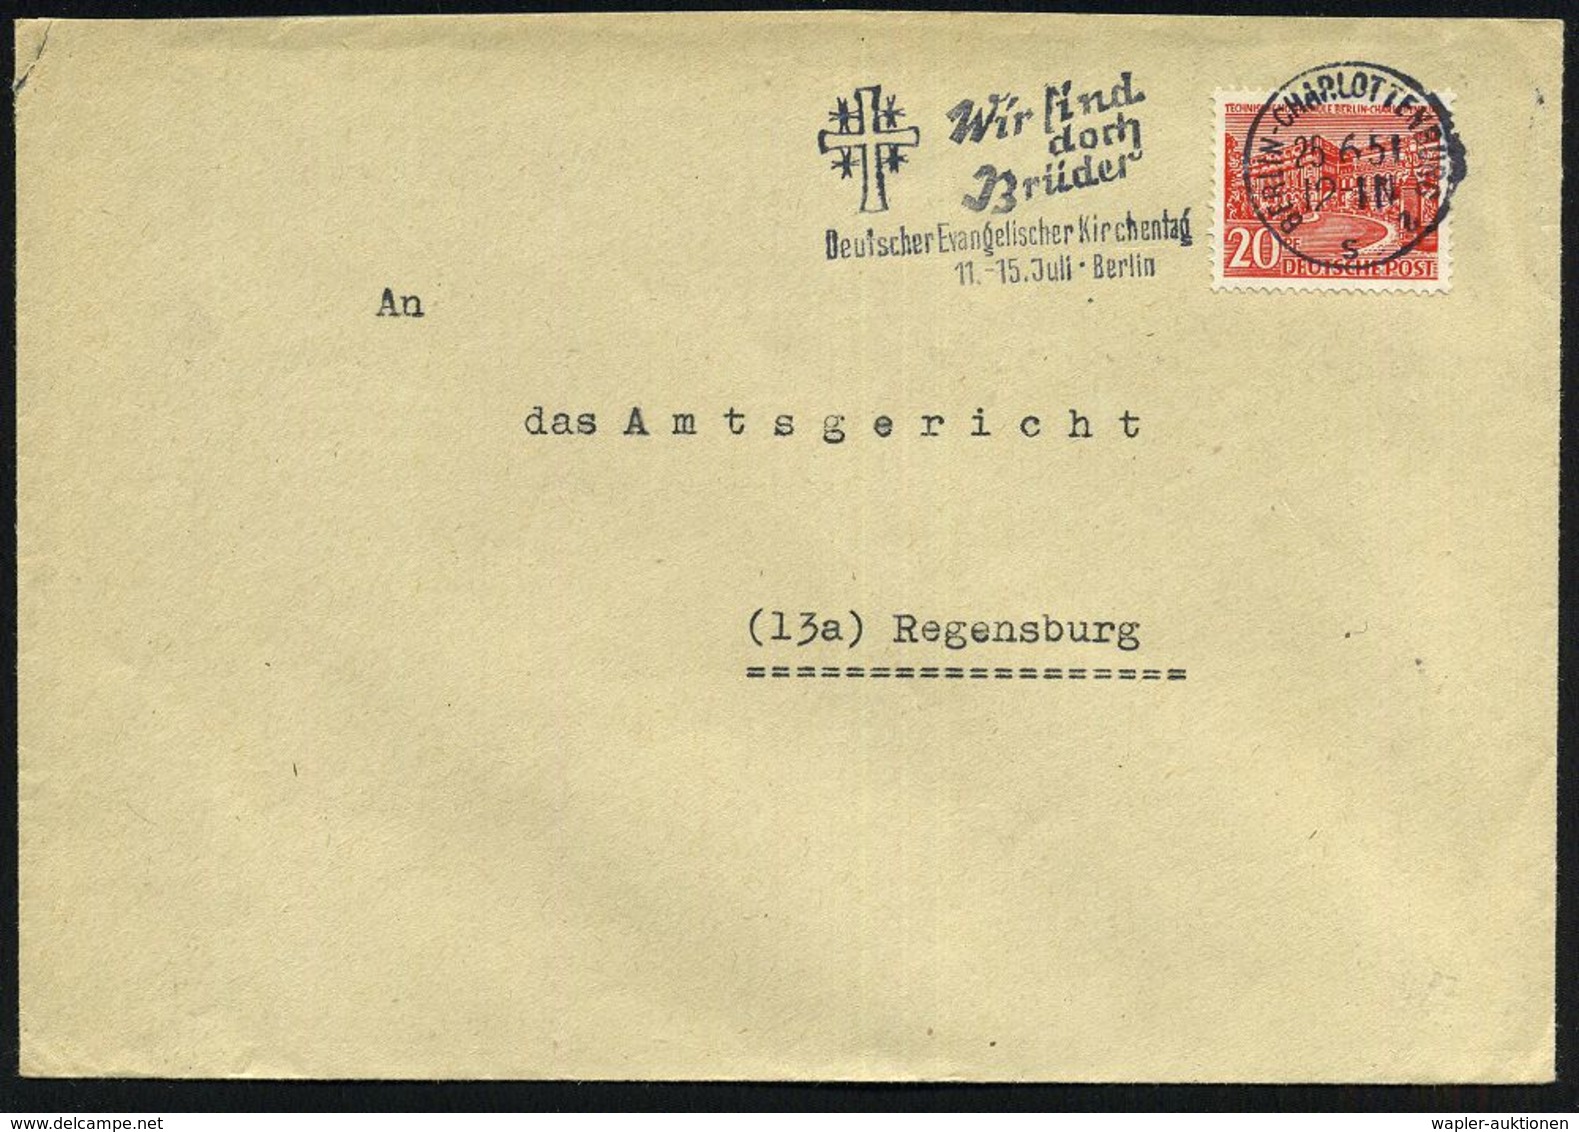 BERLIN-CHARLOTTENBURG 2/ S/ Wir Sind/ Doch/ Brüder/ Deutscher Evangel.Kirchentag 1951 (25.6.) MWSt = Jerusalem-Kreuz , K - Christendom